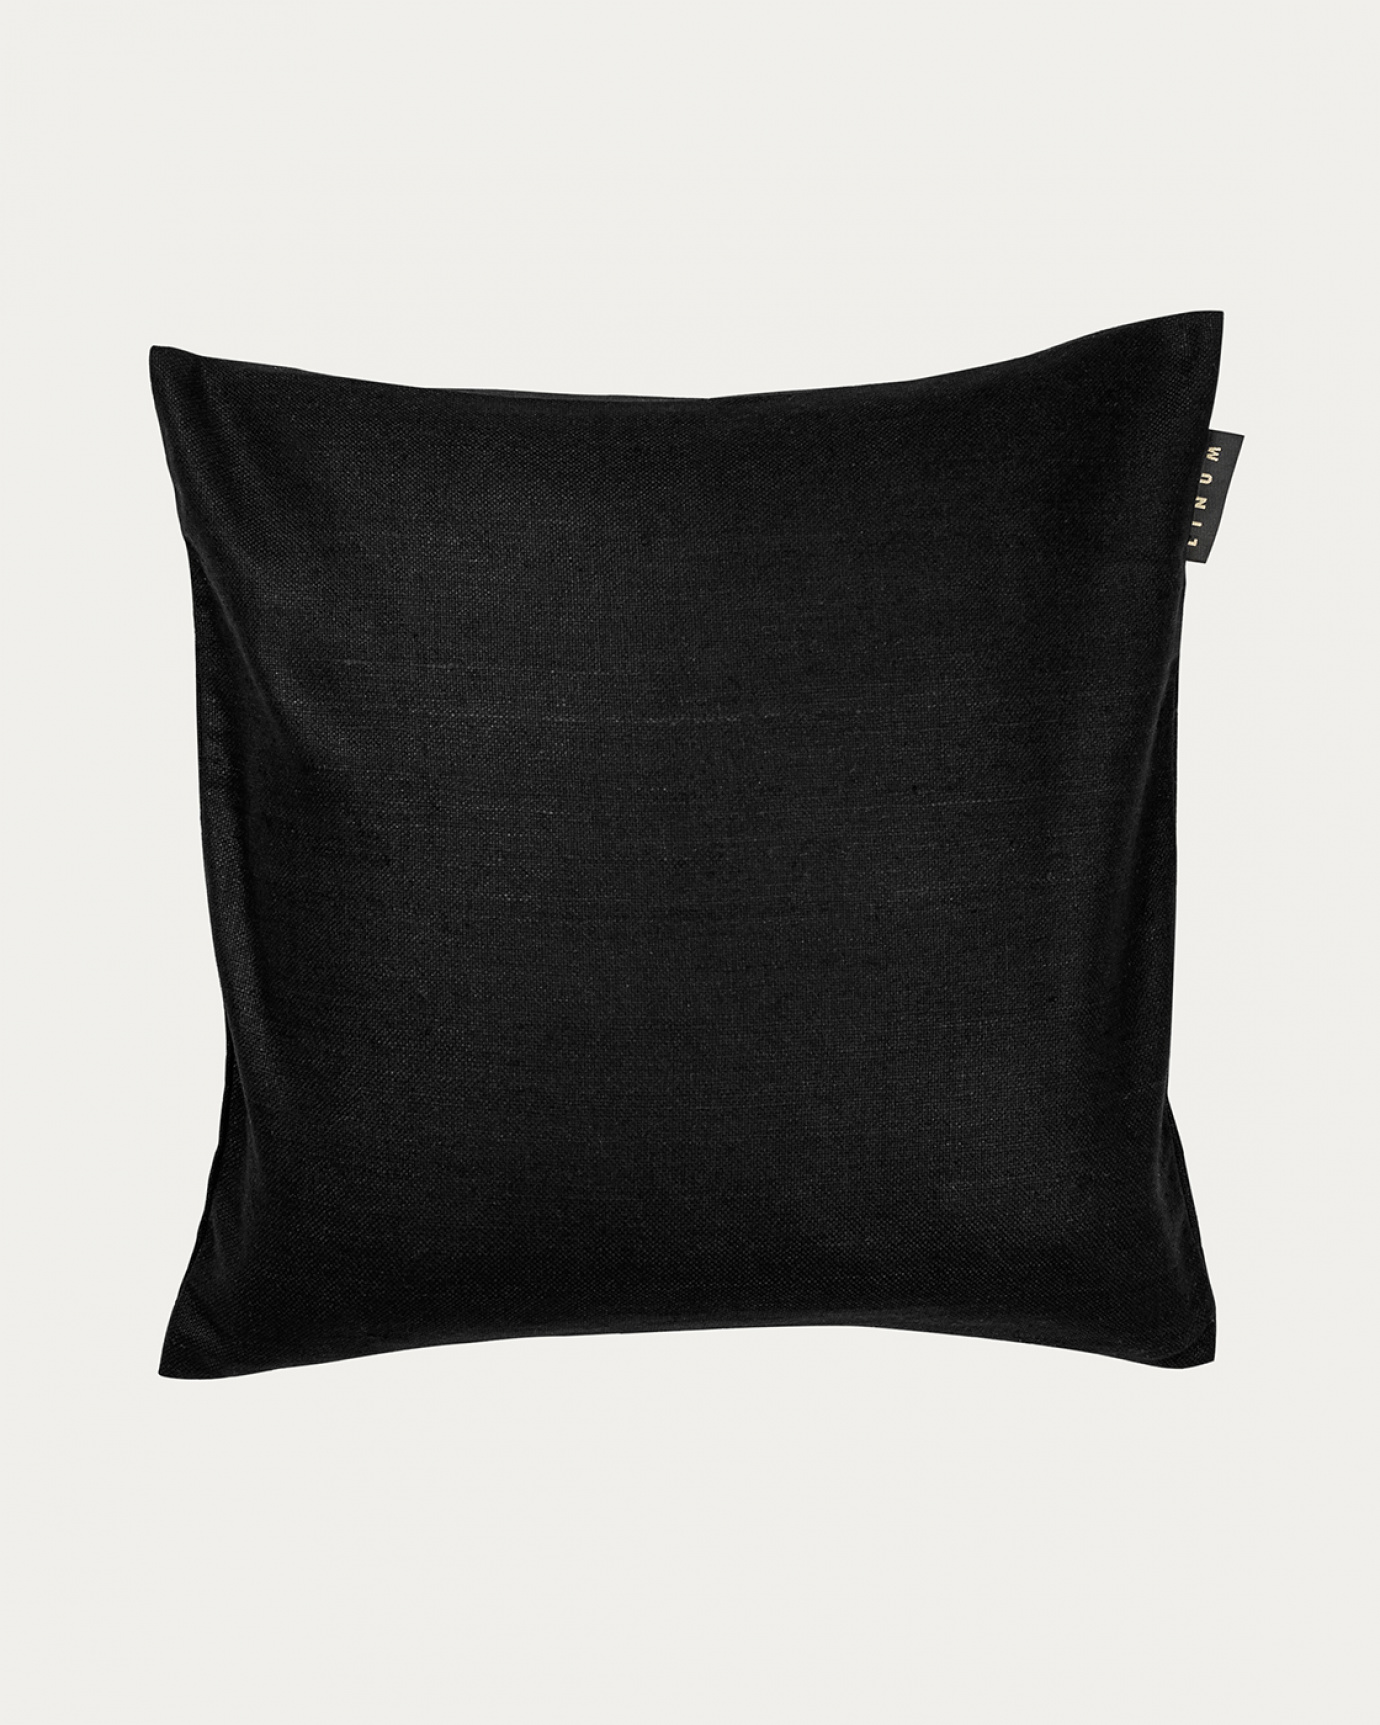 Immagine prodotto nero SETA copricuscini realizzata in 100% seta grezza che dona una bella lucentezza da LINUM DESIGN. Dimensioni 50x50 cm.